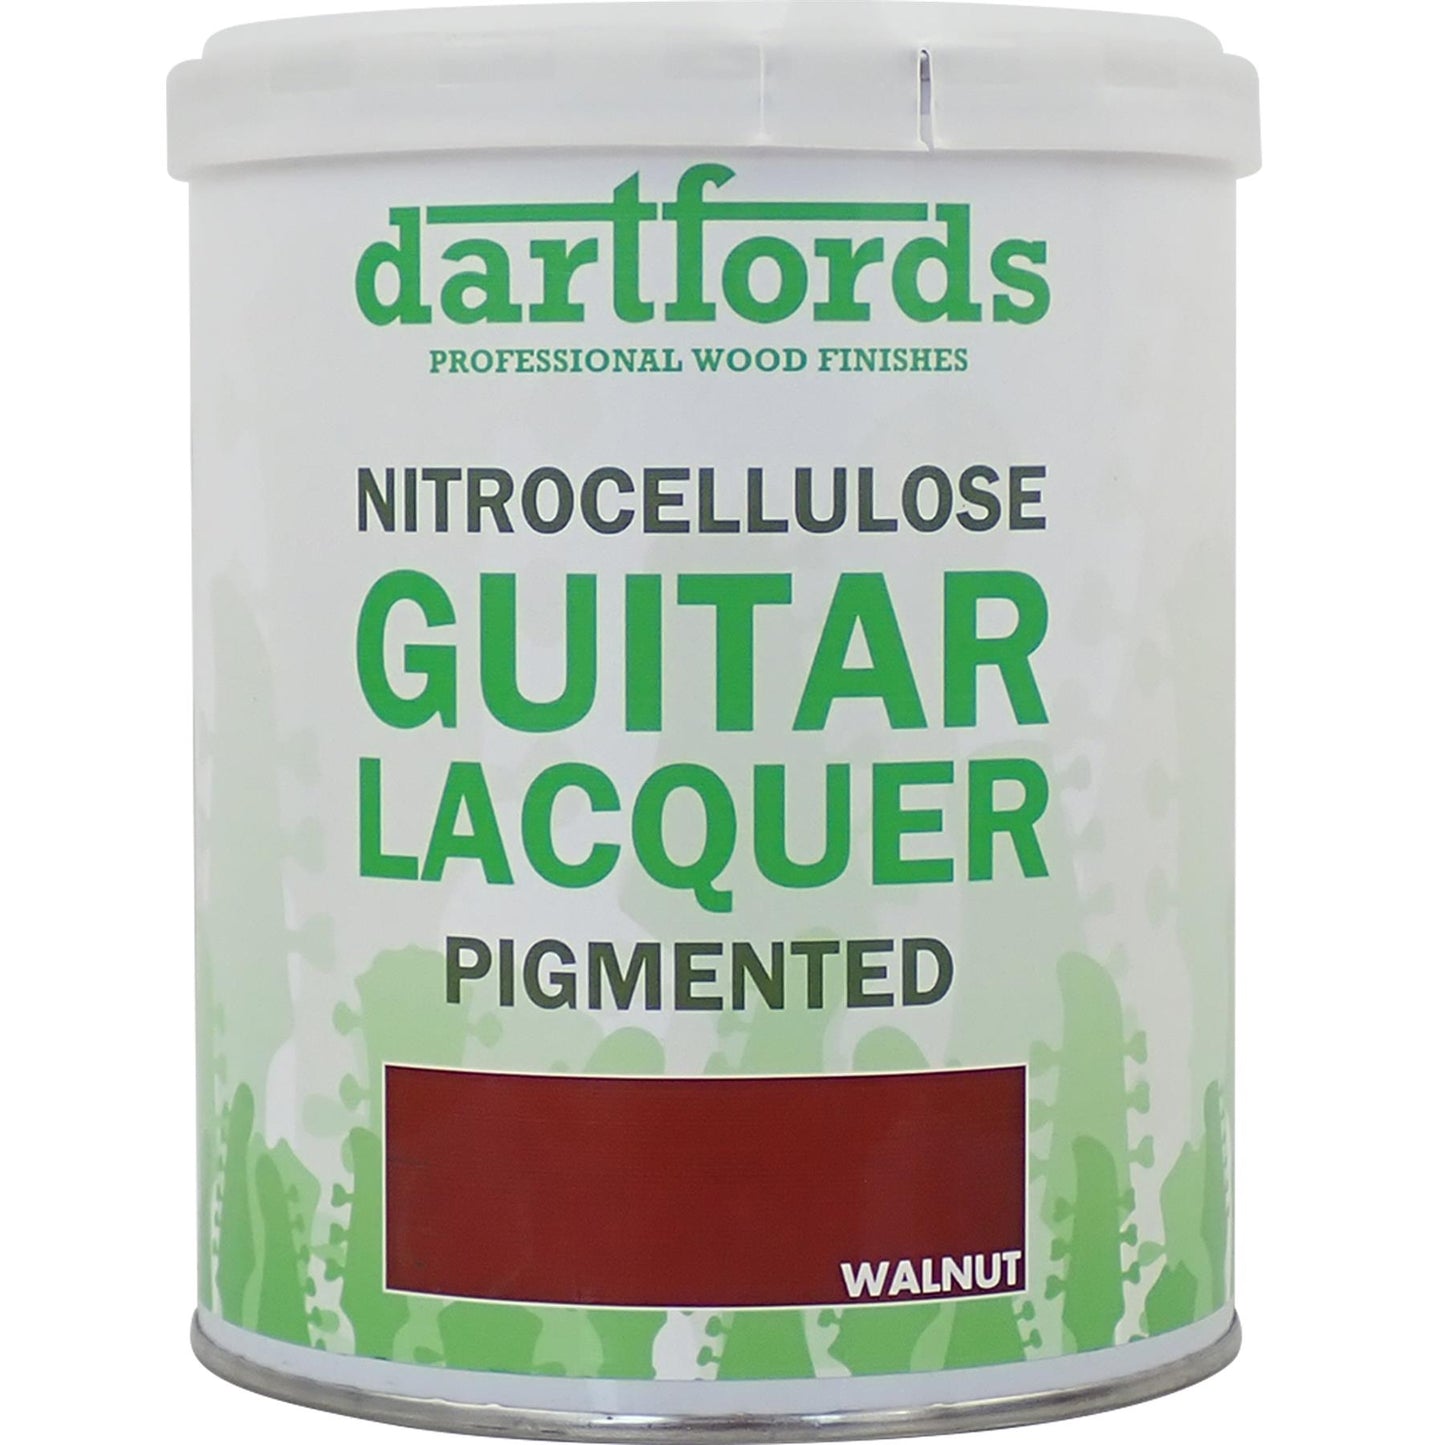 dartfords Solid Walnut Pigmented Nitrocellulose Guitar Lacquer - 1 litre Tin